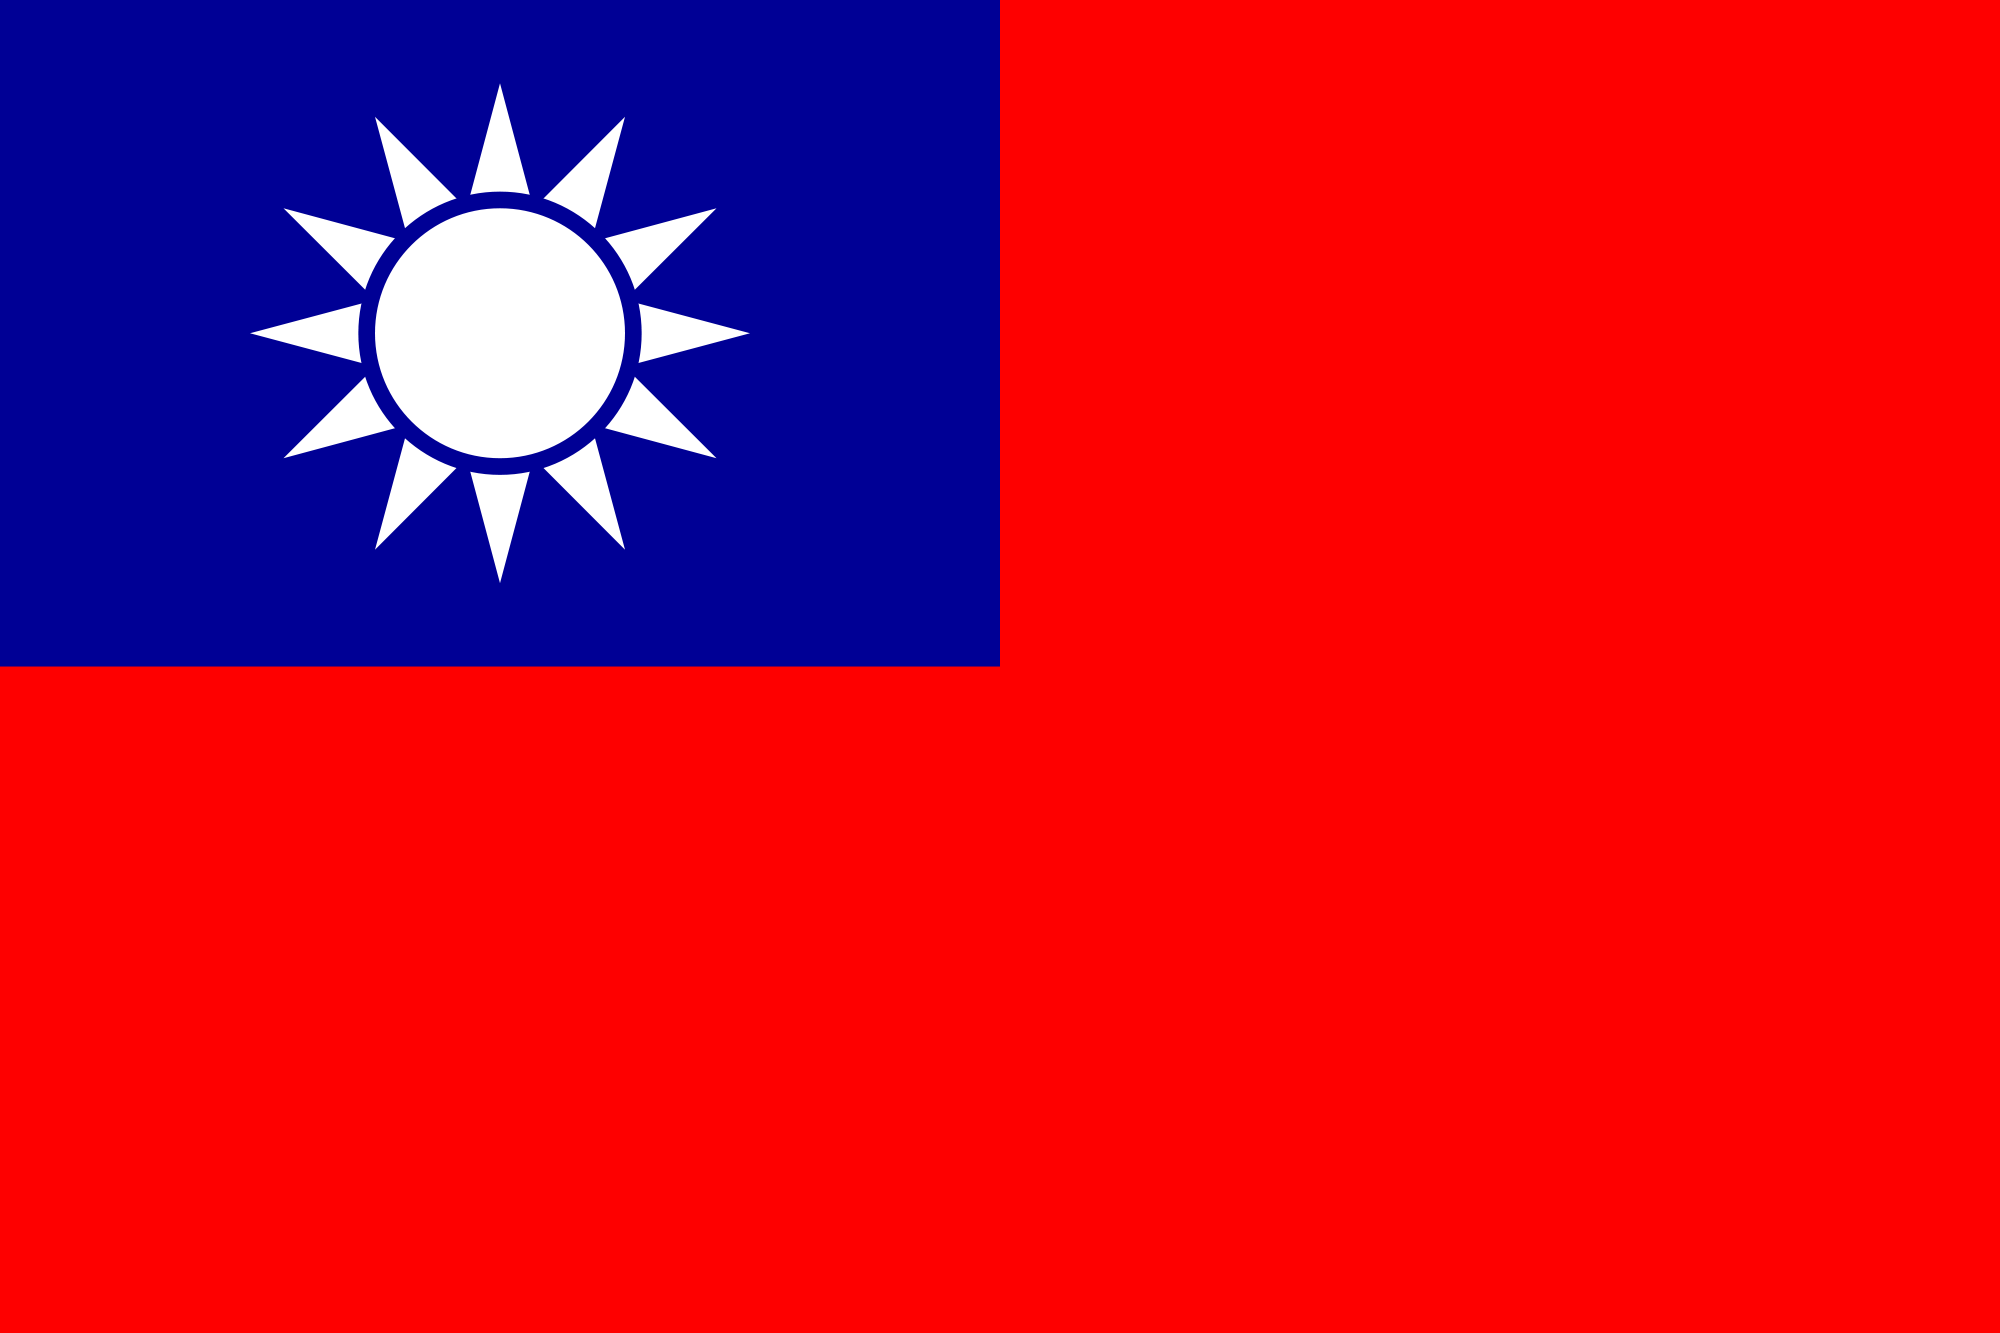 File:Taiwan symbol.png